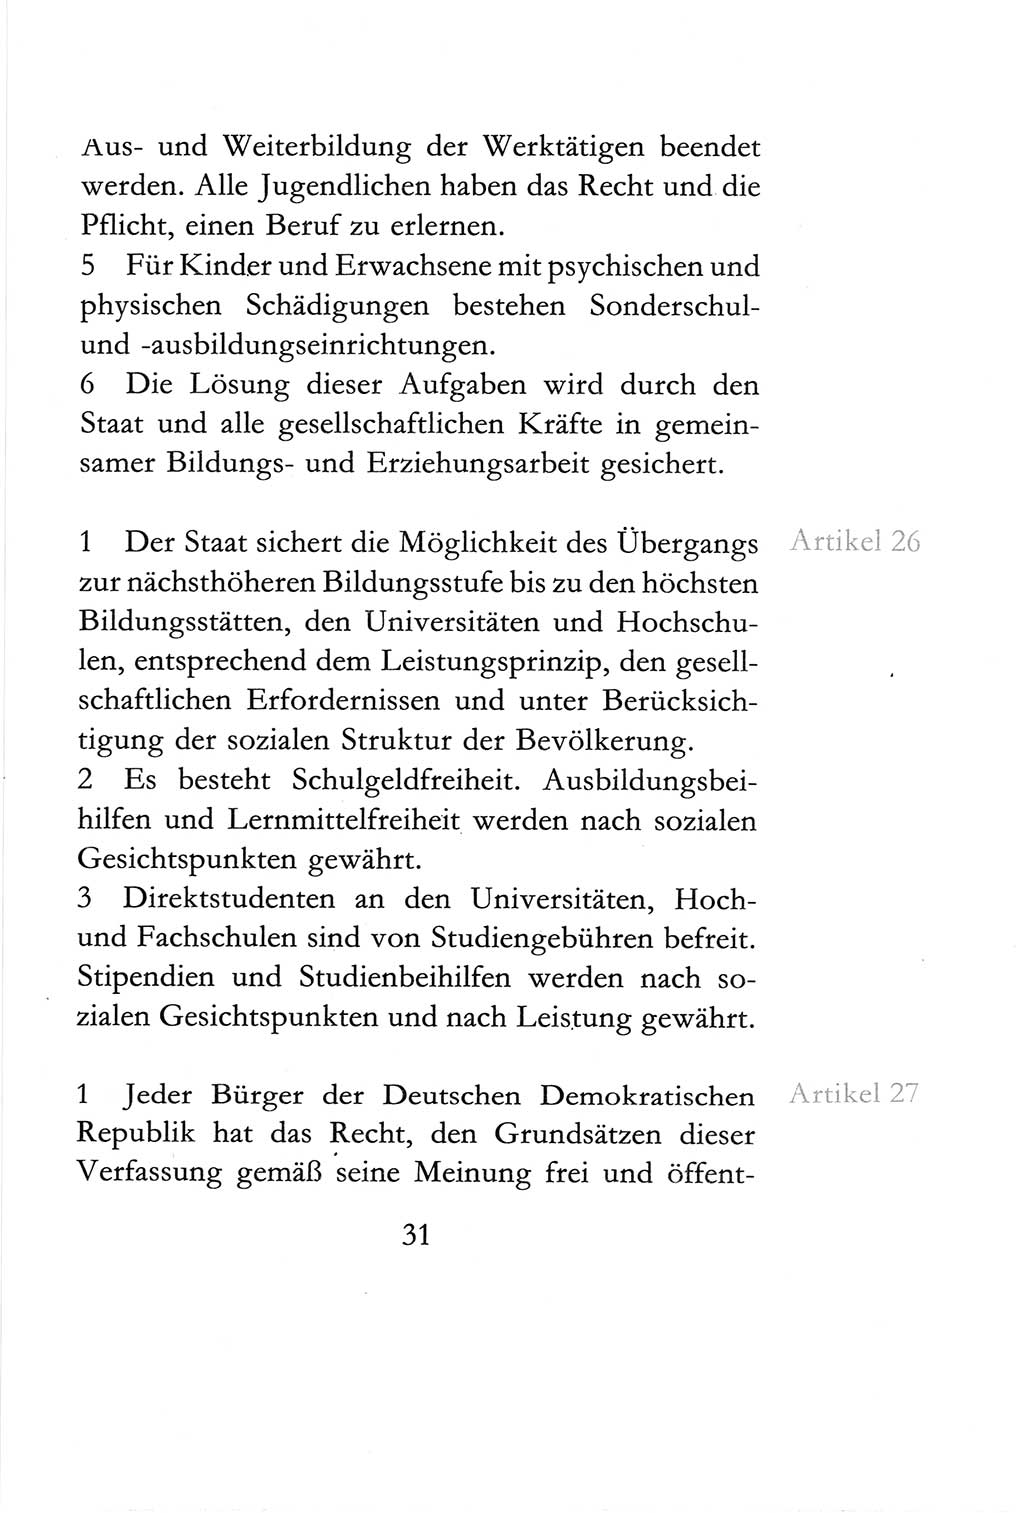 Verfassung der Deutschen Demokratischen Republik (DDR) vom 6. April 1968, Seite 31 (Verf. DDR 1968, S. 31)